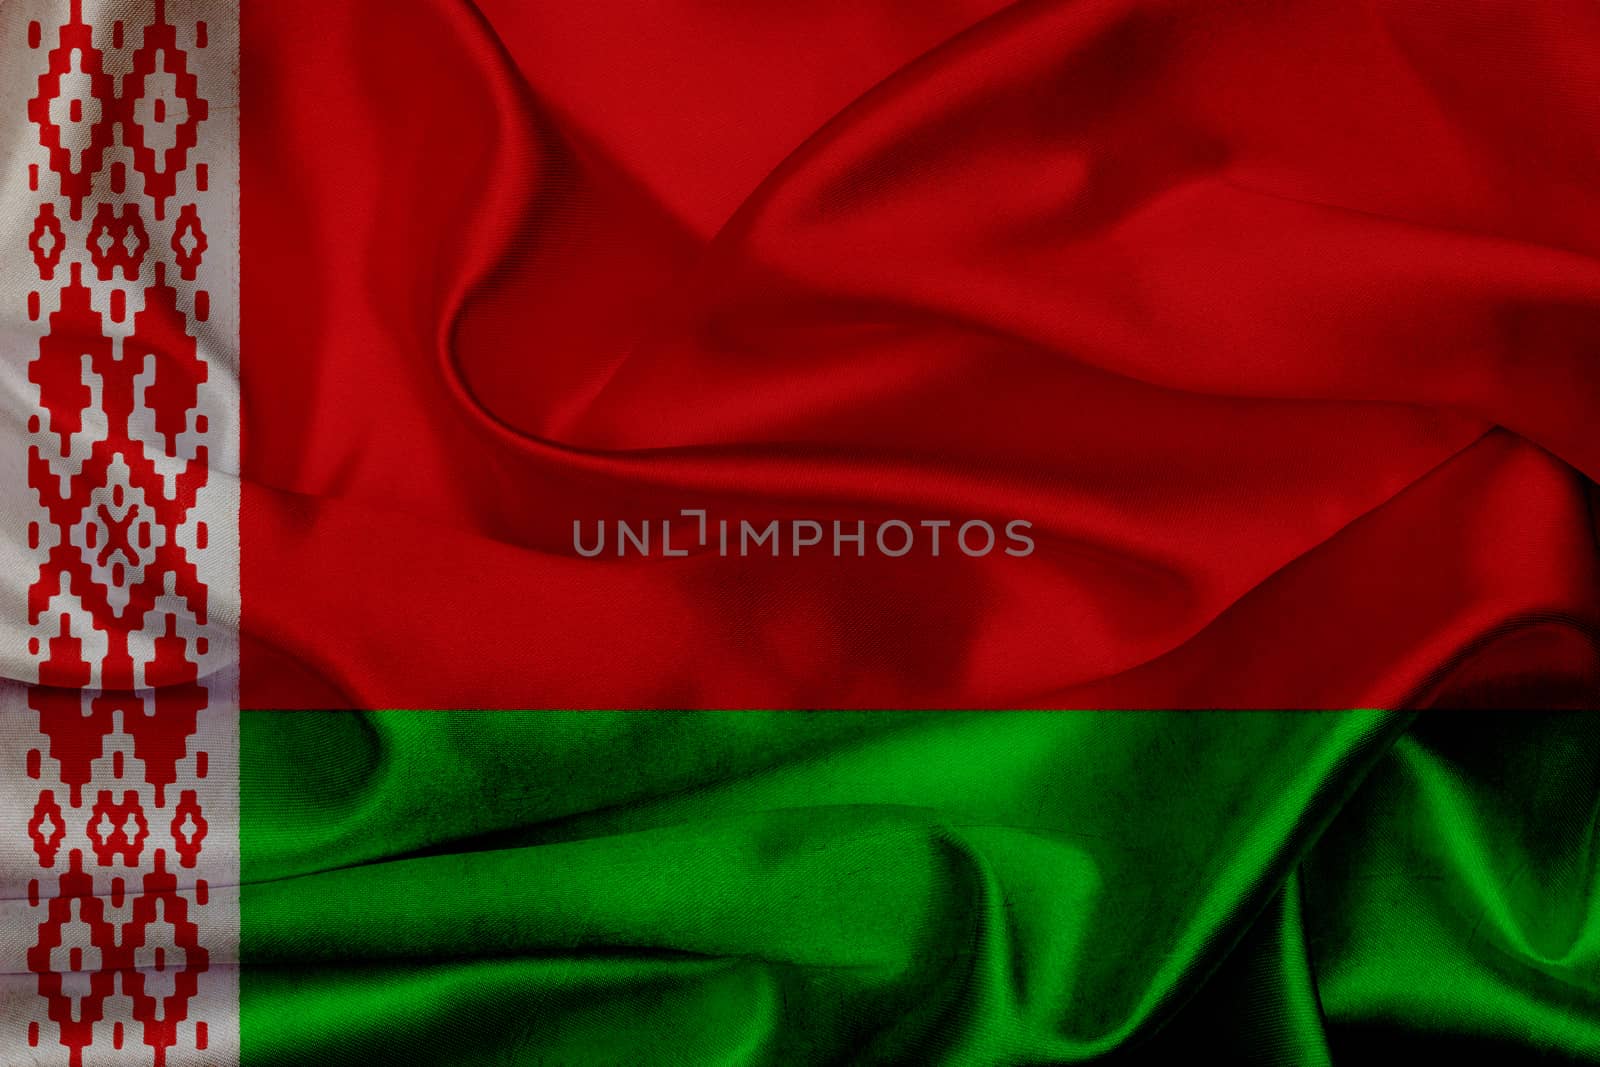 Belarus grunge waving flag